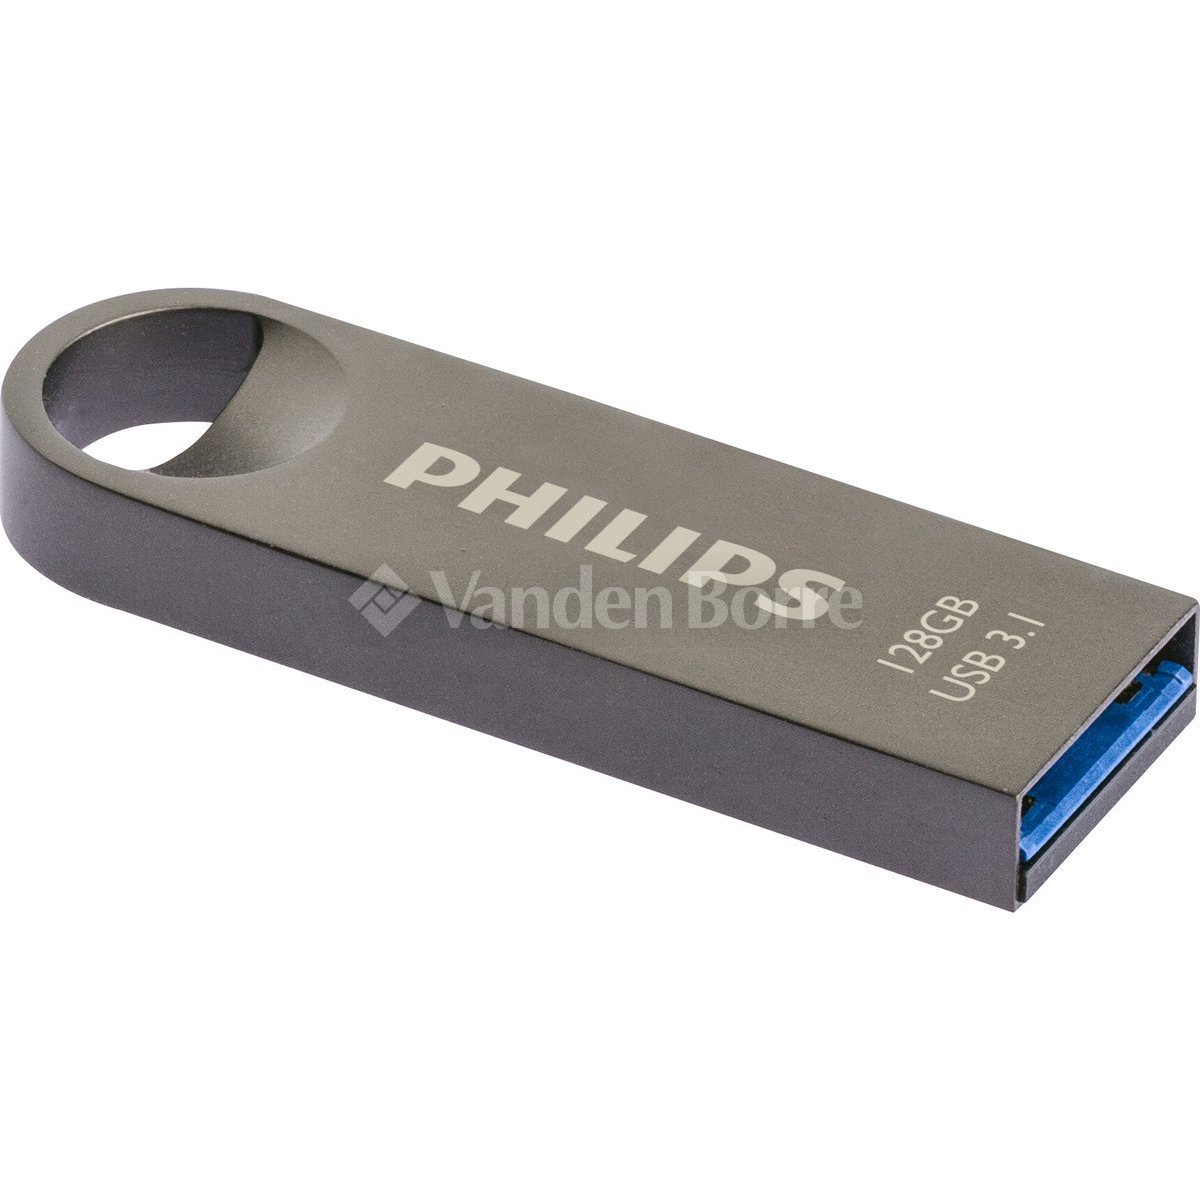 Clé USB  Vanden Borre – Le prix le plus bas